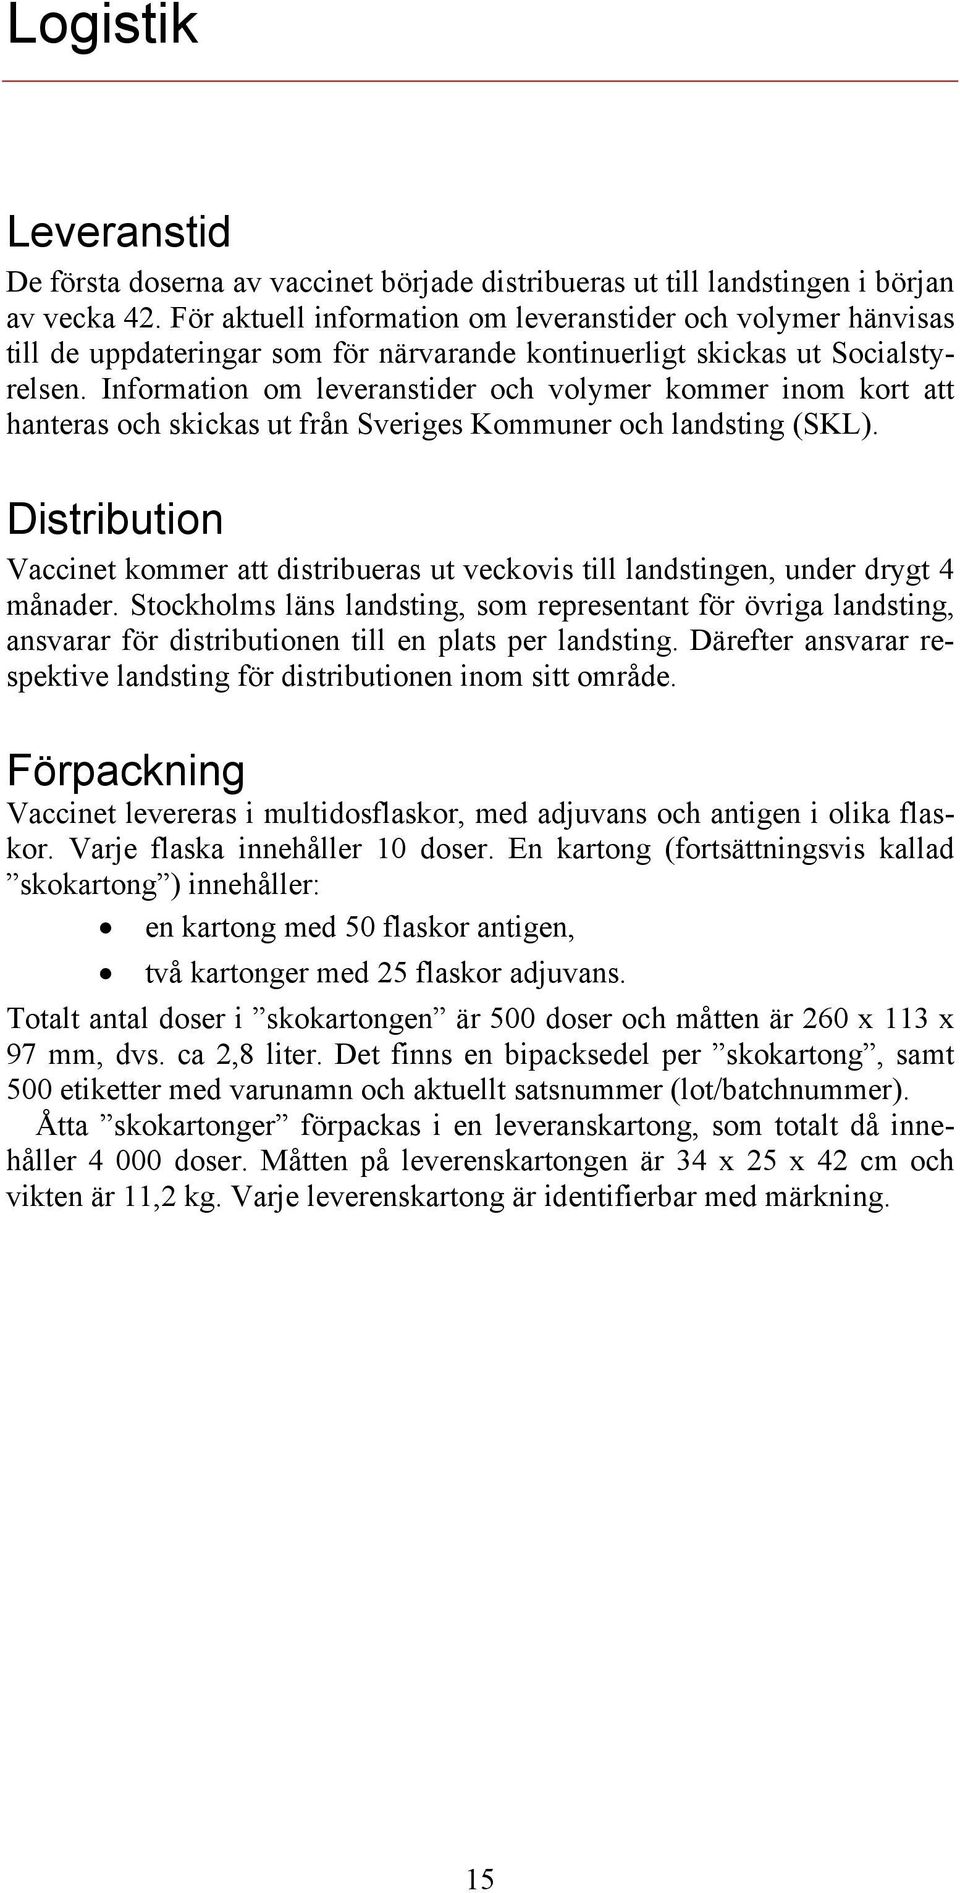 Information om leveranstider och volymer kommer inom kort att hanteras och skickas ut från Sveriges Kommuner och landsting (SKL).